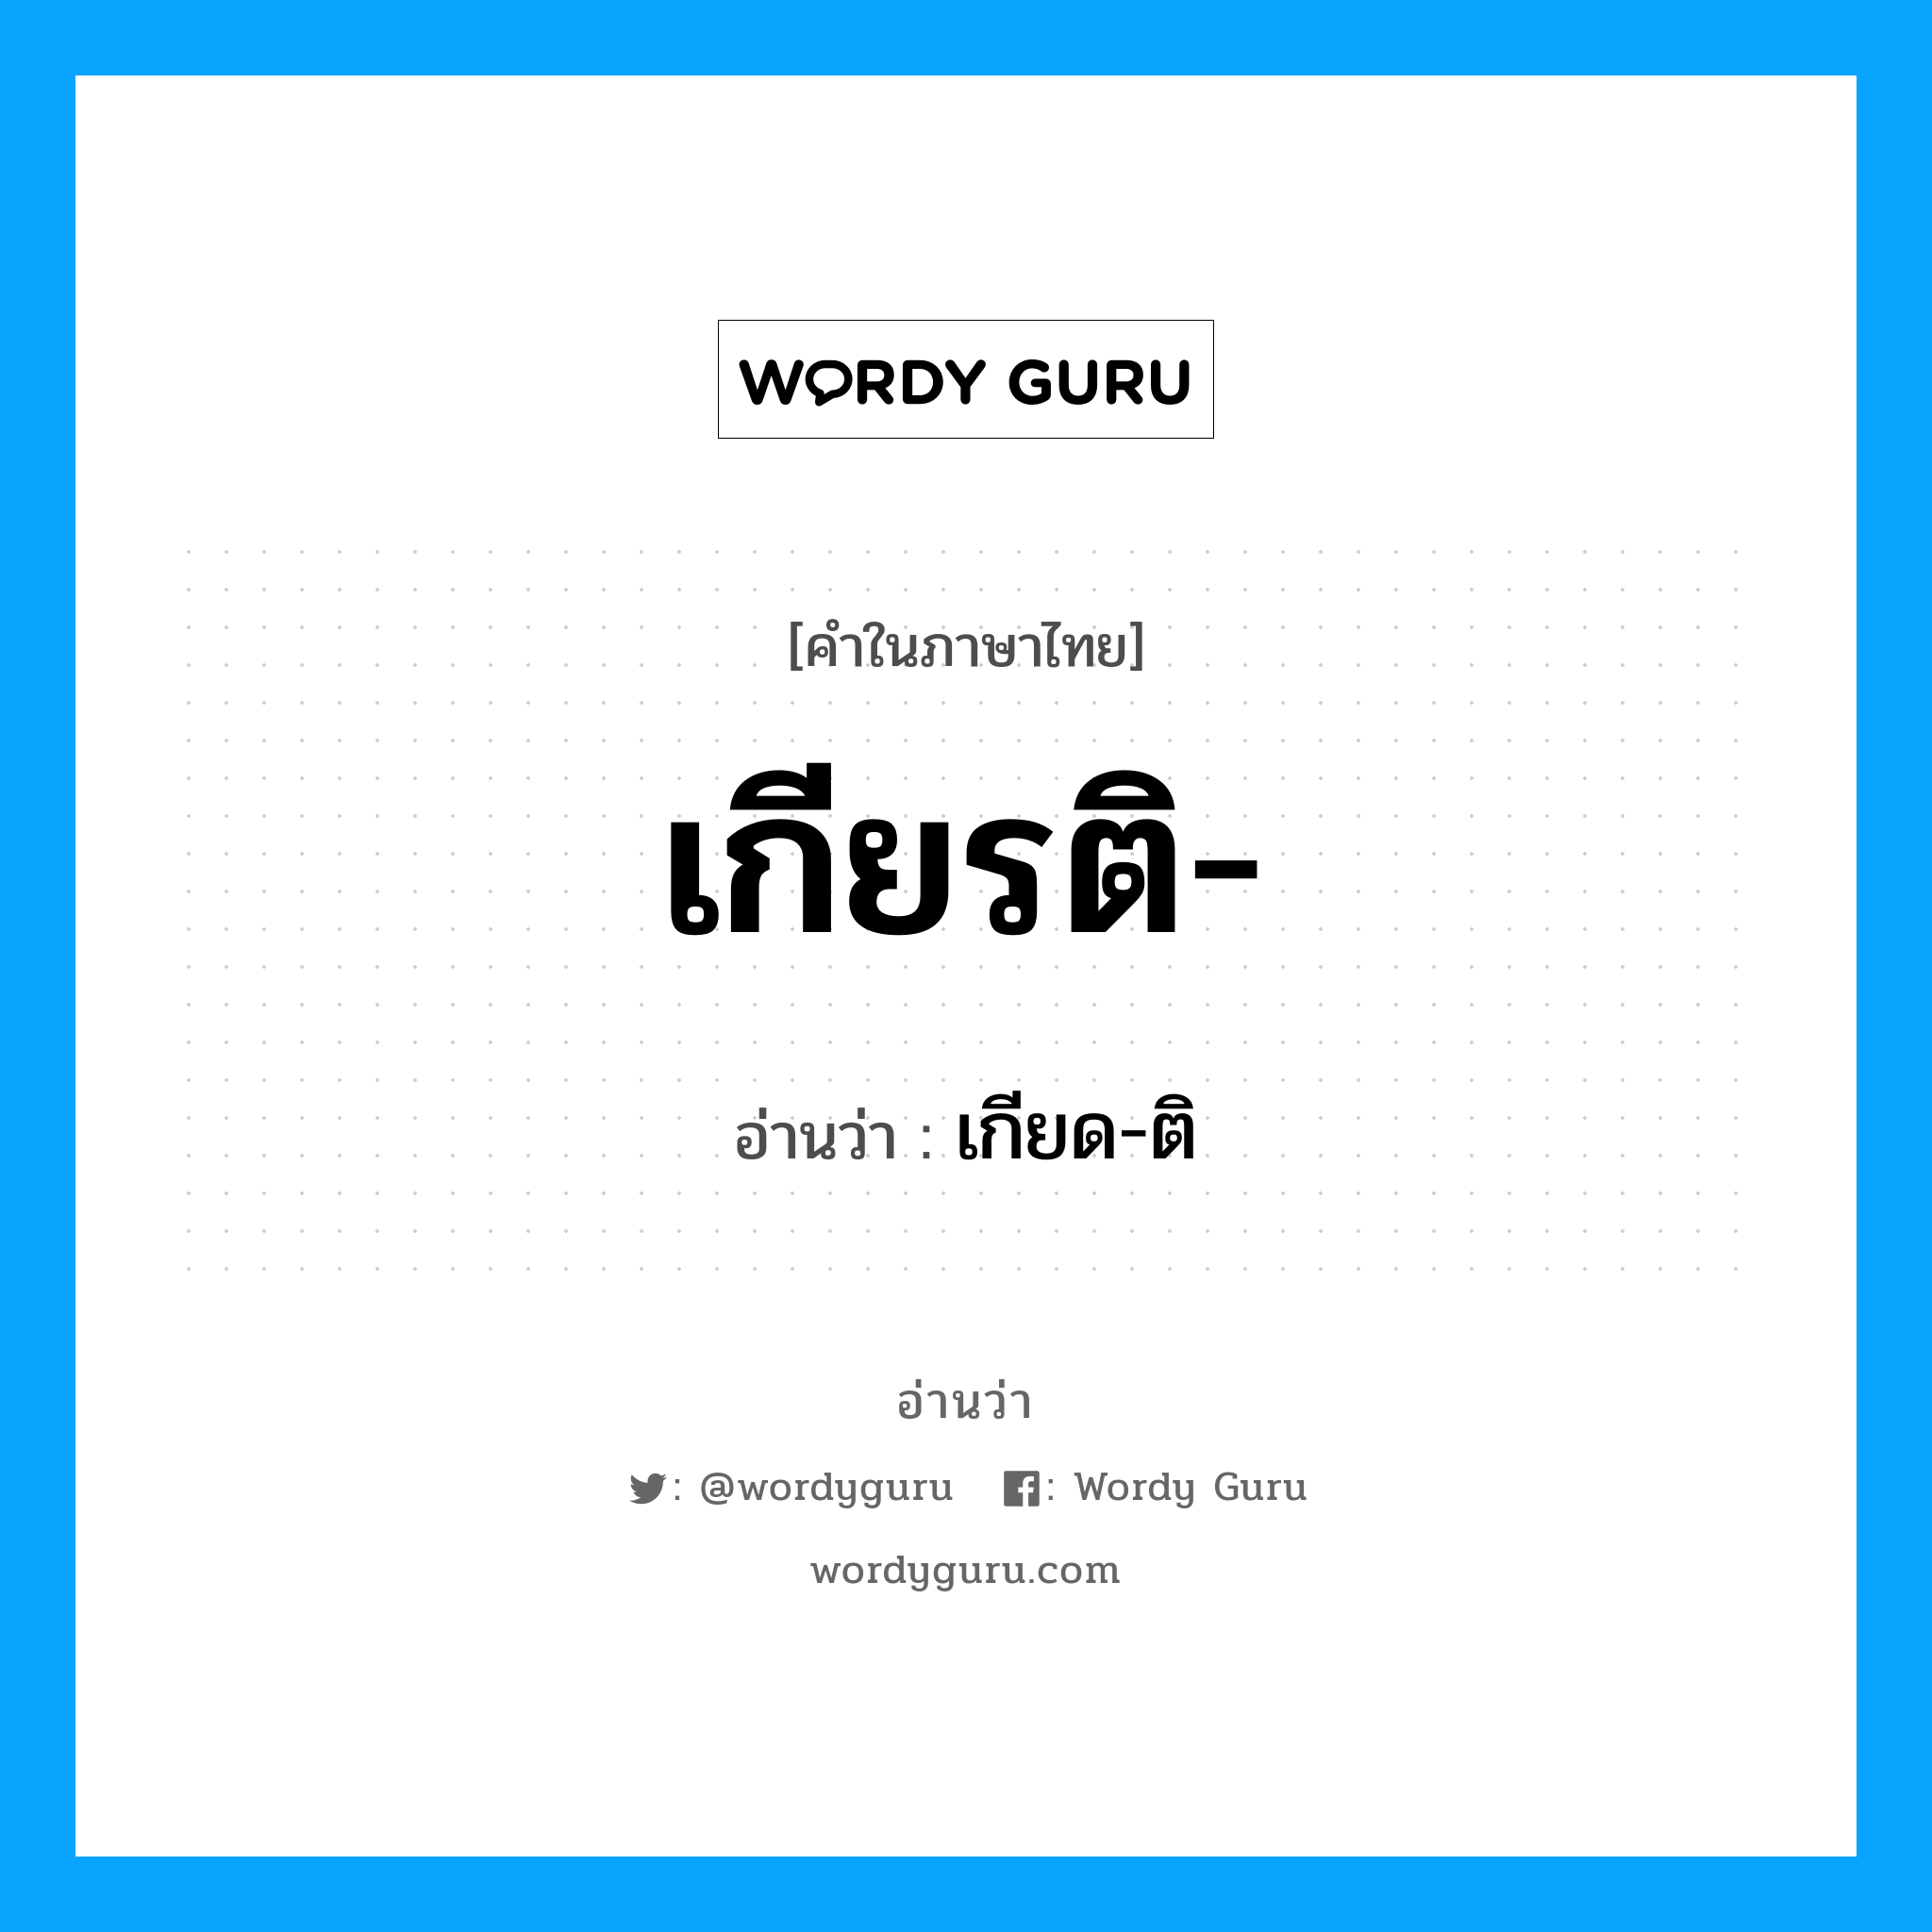 เกียด-ติ เป็นคำอ่านของคำไหน?, คำในภาษาไทย เกียด-ติ อ่านว่า เกียรติ-